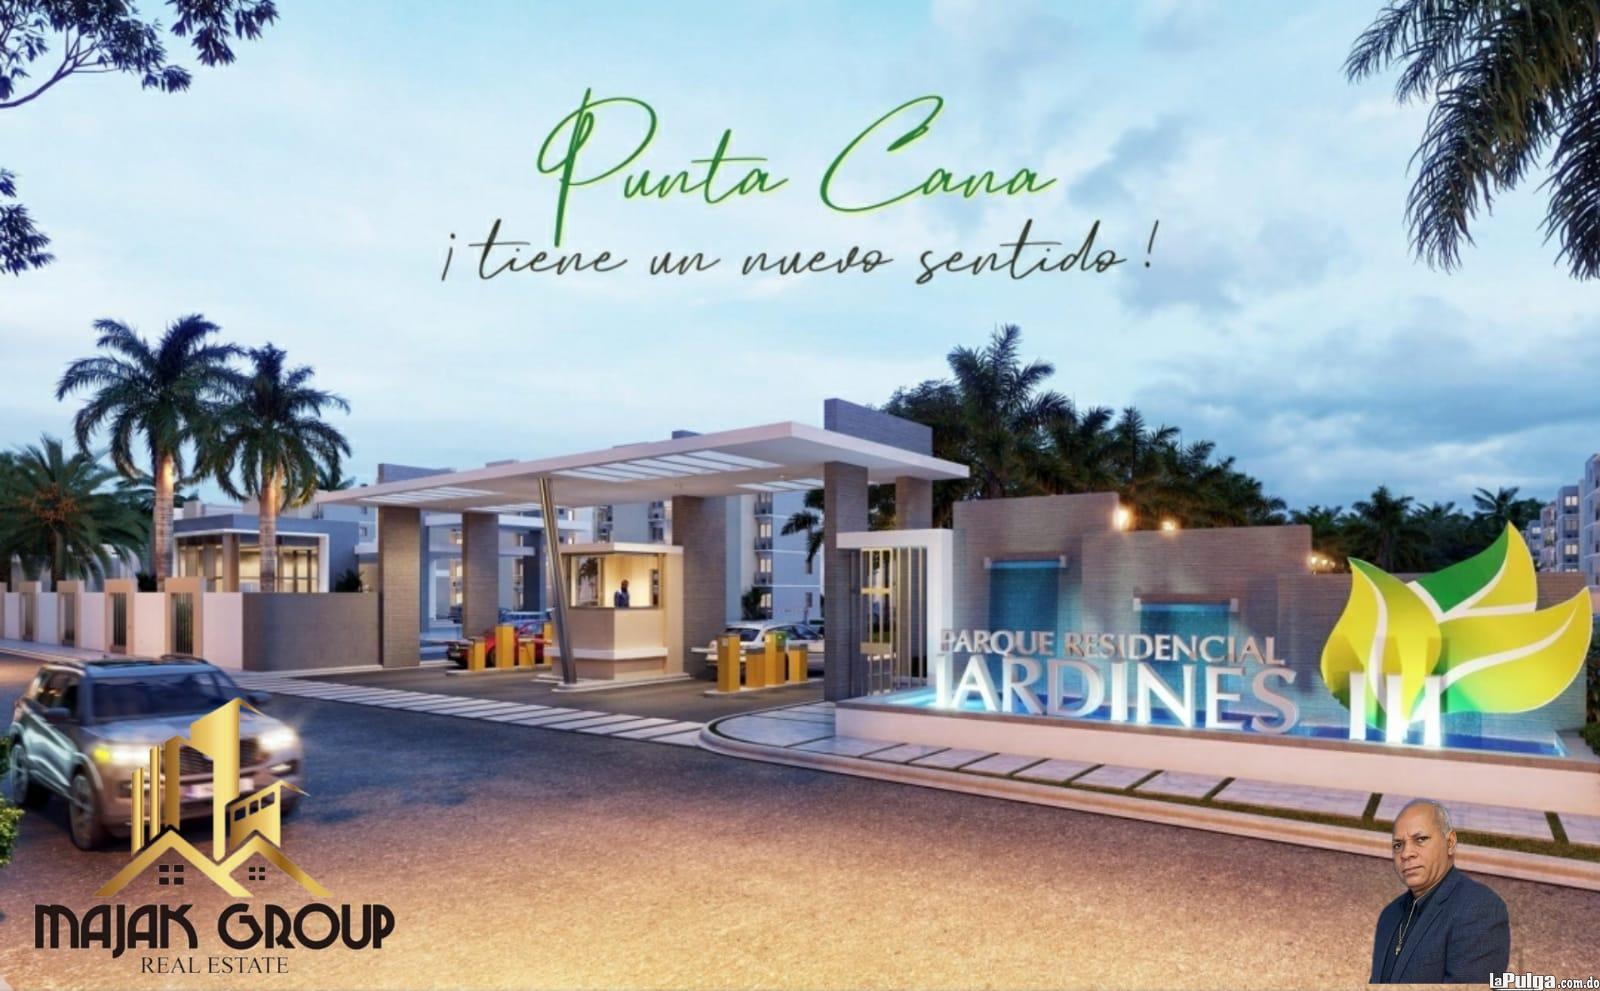 Apartamento en sector Punta Cana - Punta Cana con 1 2 3 habitaciones  Foto 7131512-4.jpg